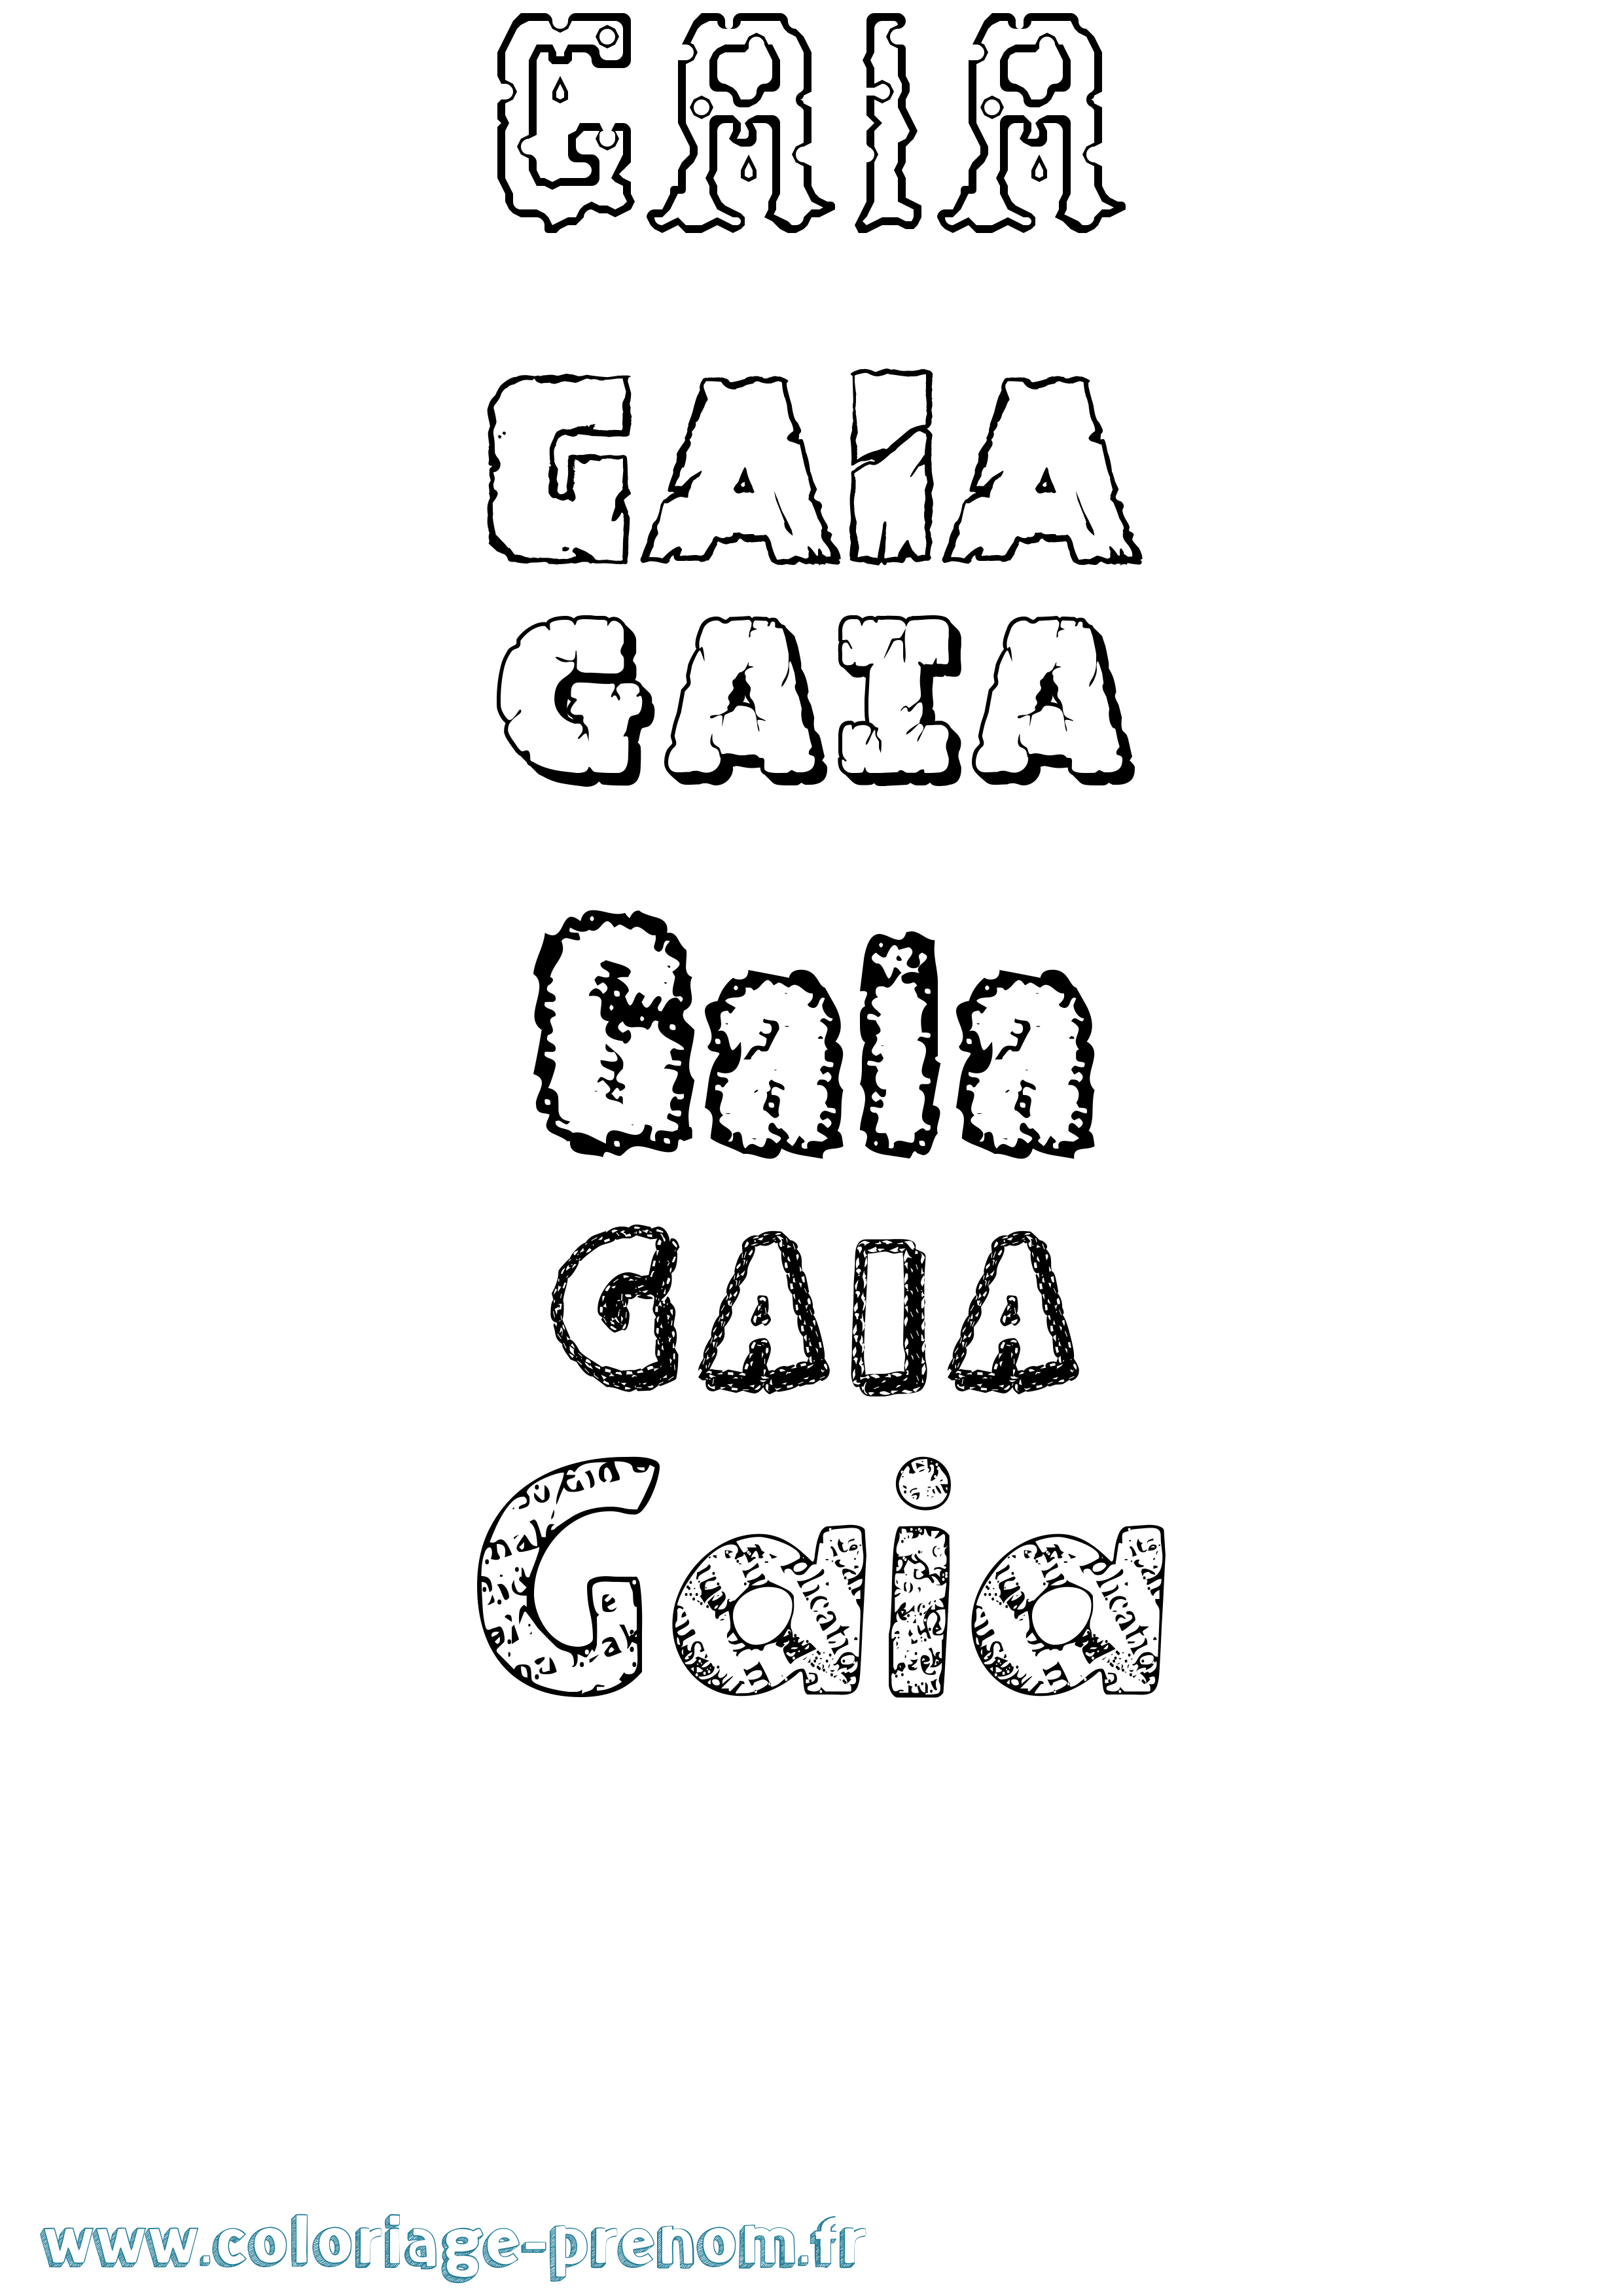 Coloriage prénom Gaia